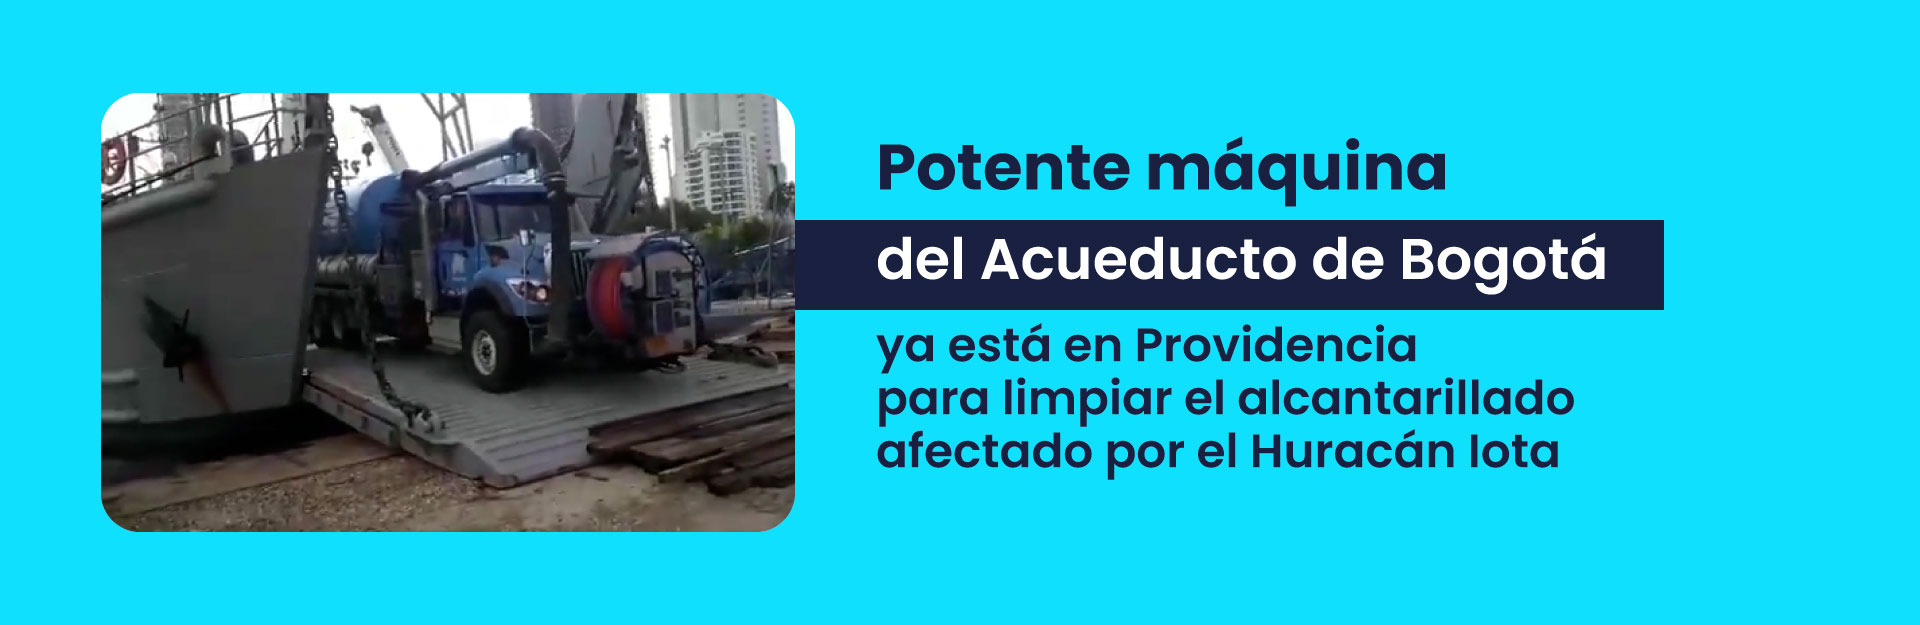 Potente máquina del Acueducto de Bogotá ya está en Providencia para limpiar el alcantarillado afectado por el Huracán Iota